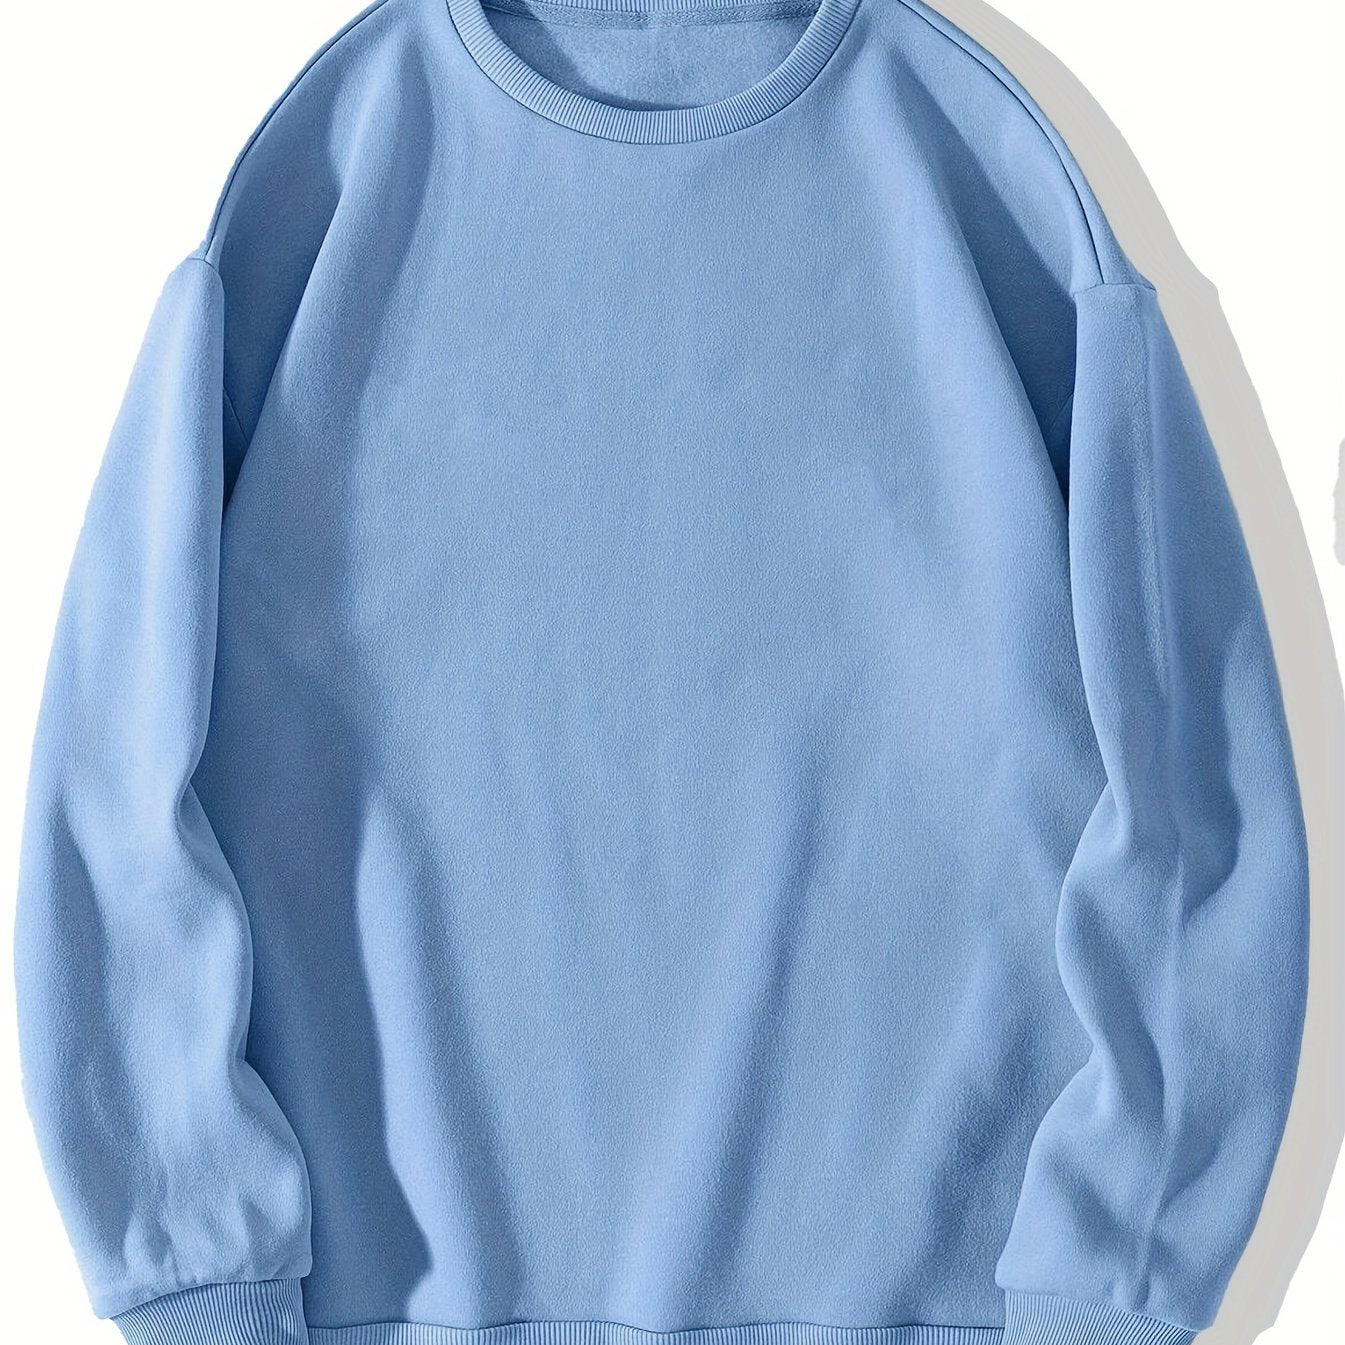 Trendy Solid Sweatshirt, Men's Casual Basic Crew Neck Pullover Sweatshirt For Men Fall Winter